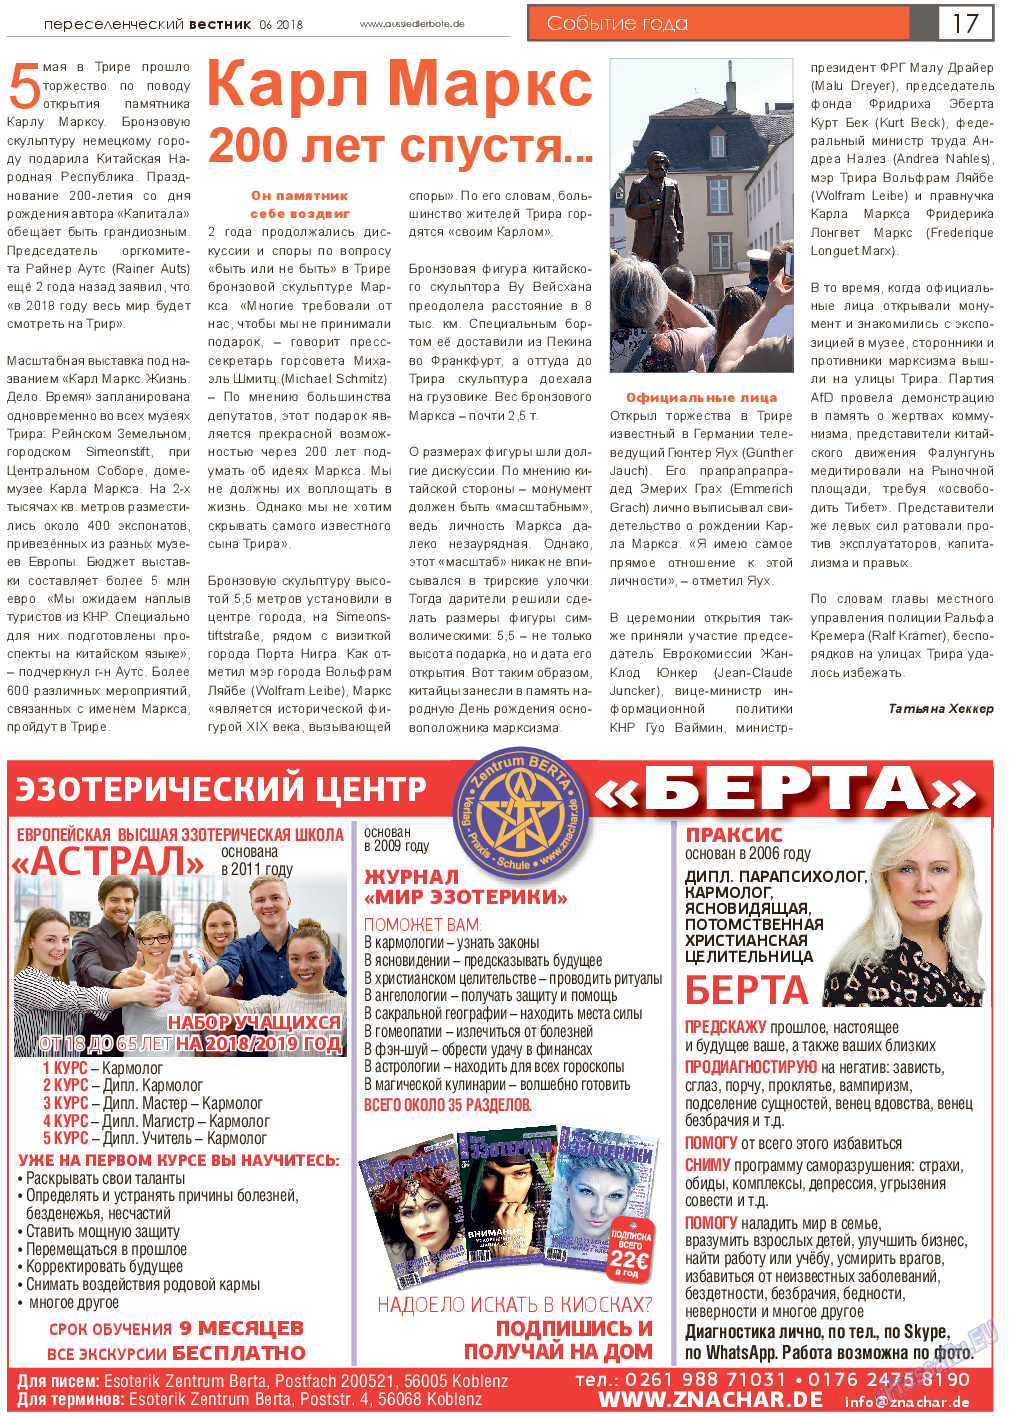 Переселенческий вестник, газета. 2018 №6 стр.17